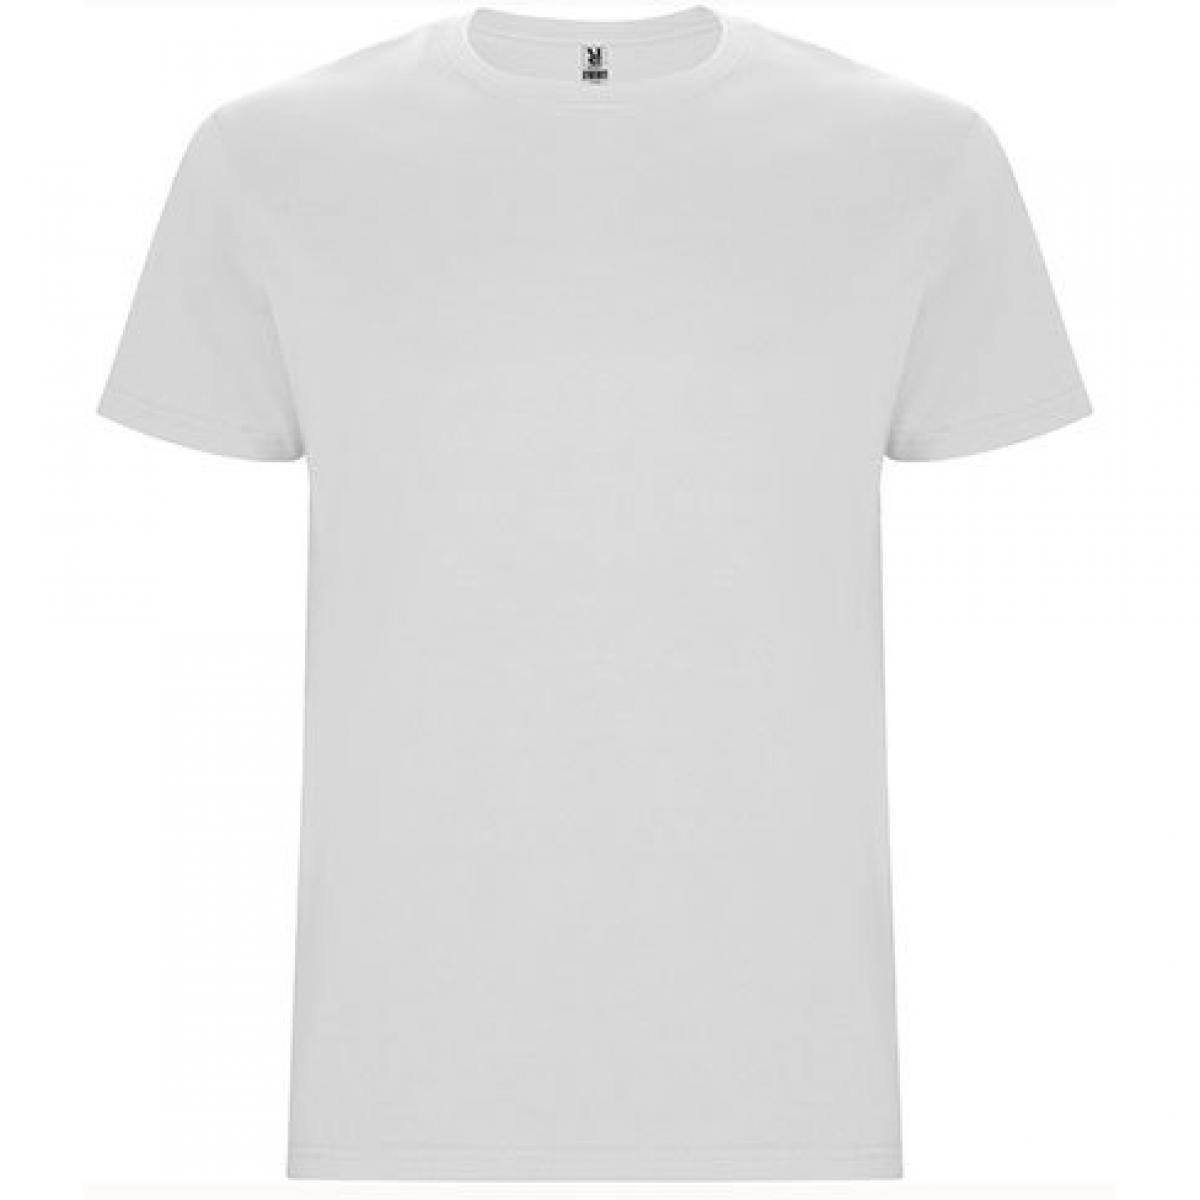 Hersteller: Roly Herstellernummer: CA6681 Artikelbezeichnung: Stafford T-Shirt - Doppellagiger Rundhalskragen Farbe: White 01